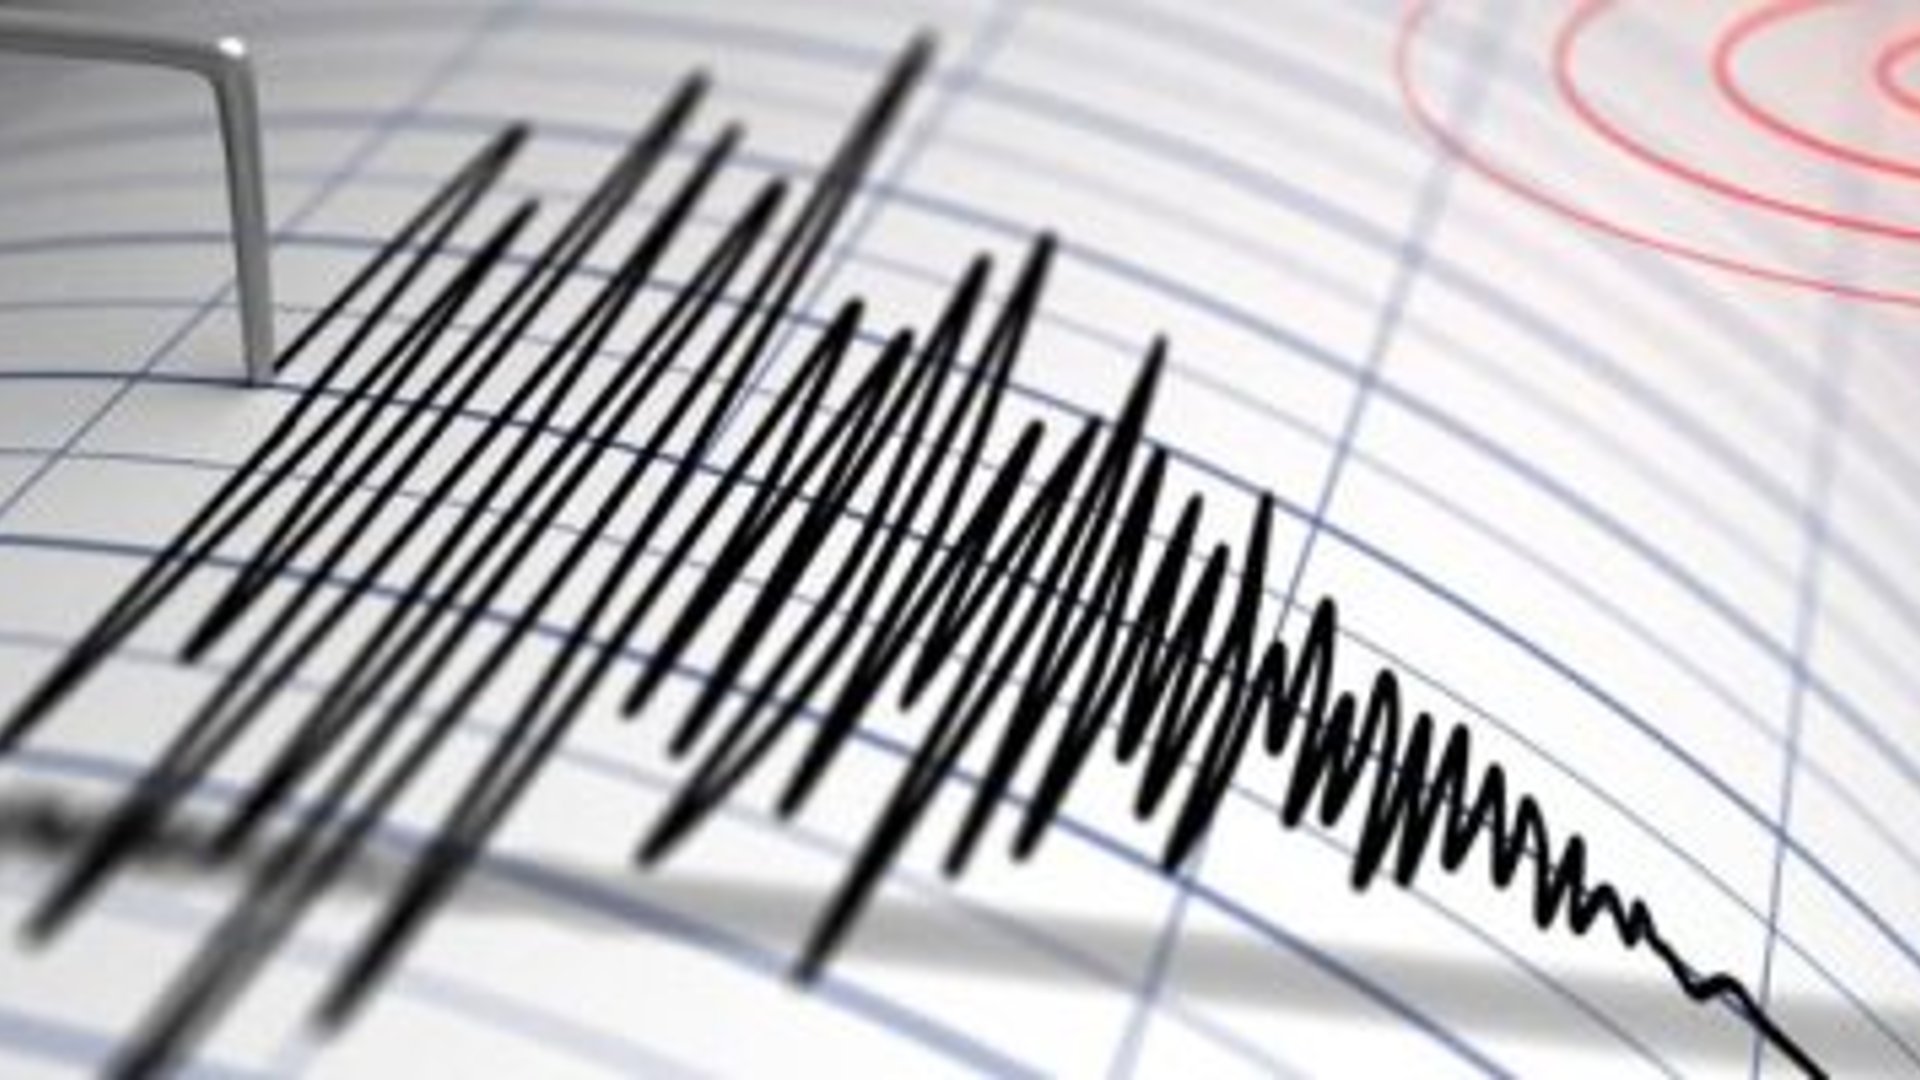 المراصد الزلزالية تسجل هزة أرضية بقوة 4.4 درجات في البصرة